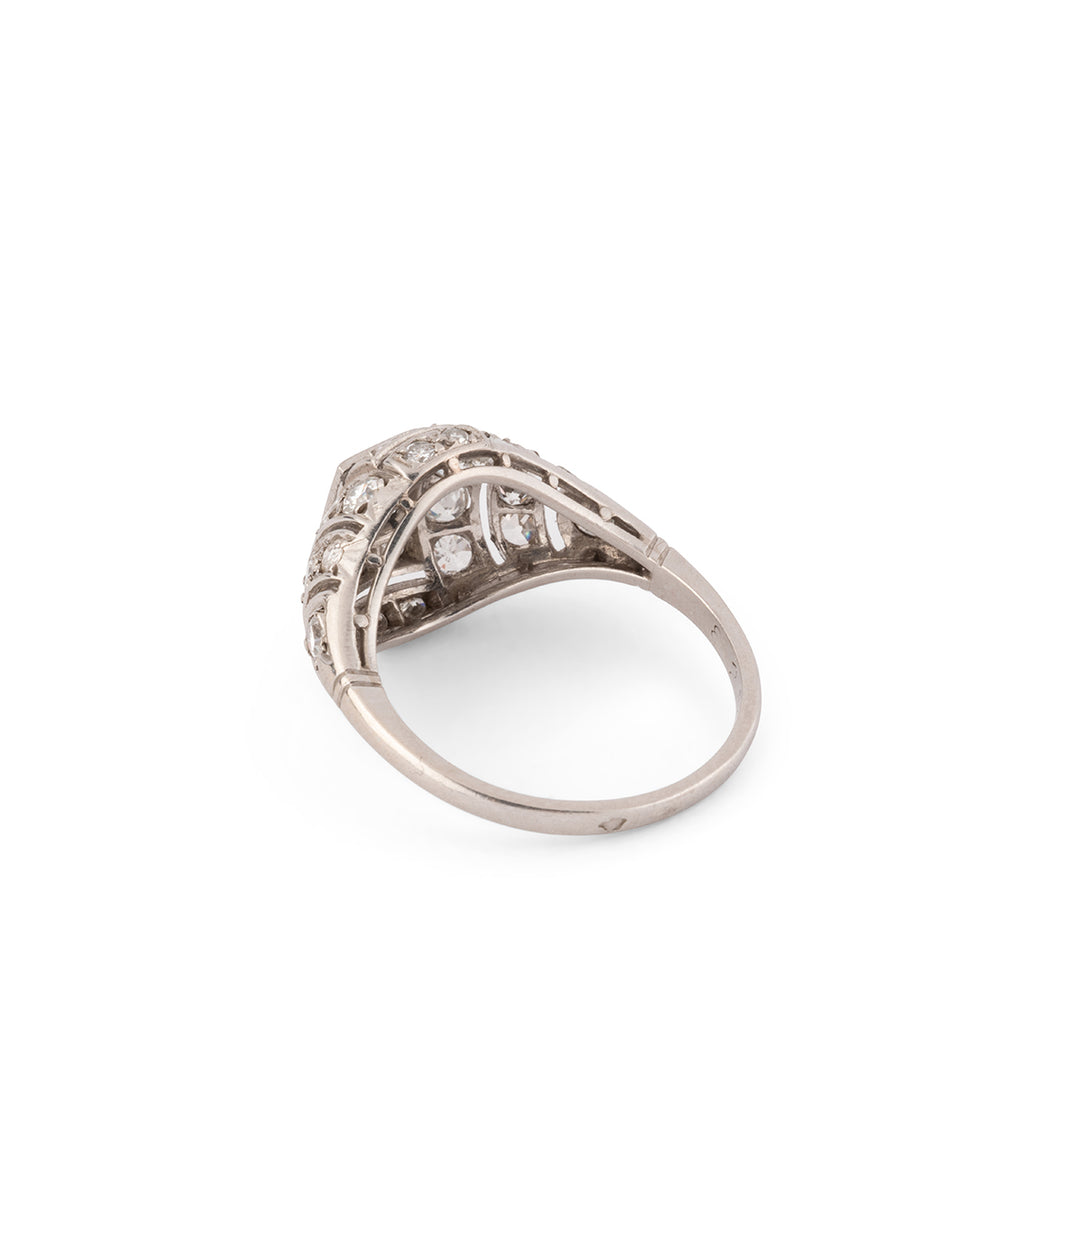 Antique platinum and diamonds engagement ring Art deco "Eamon" - Caillou Paris